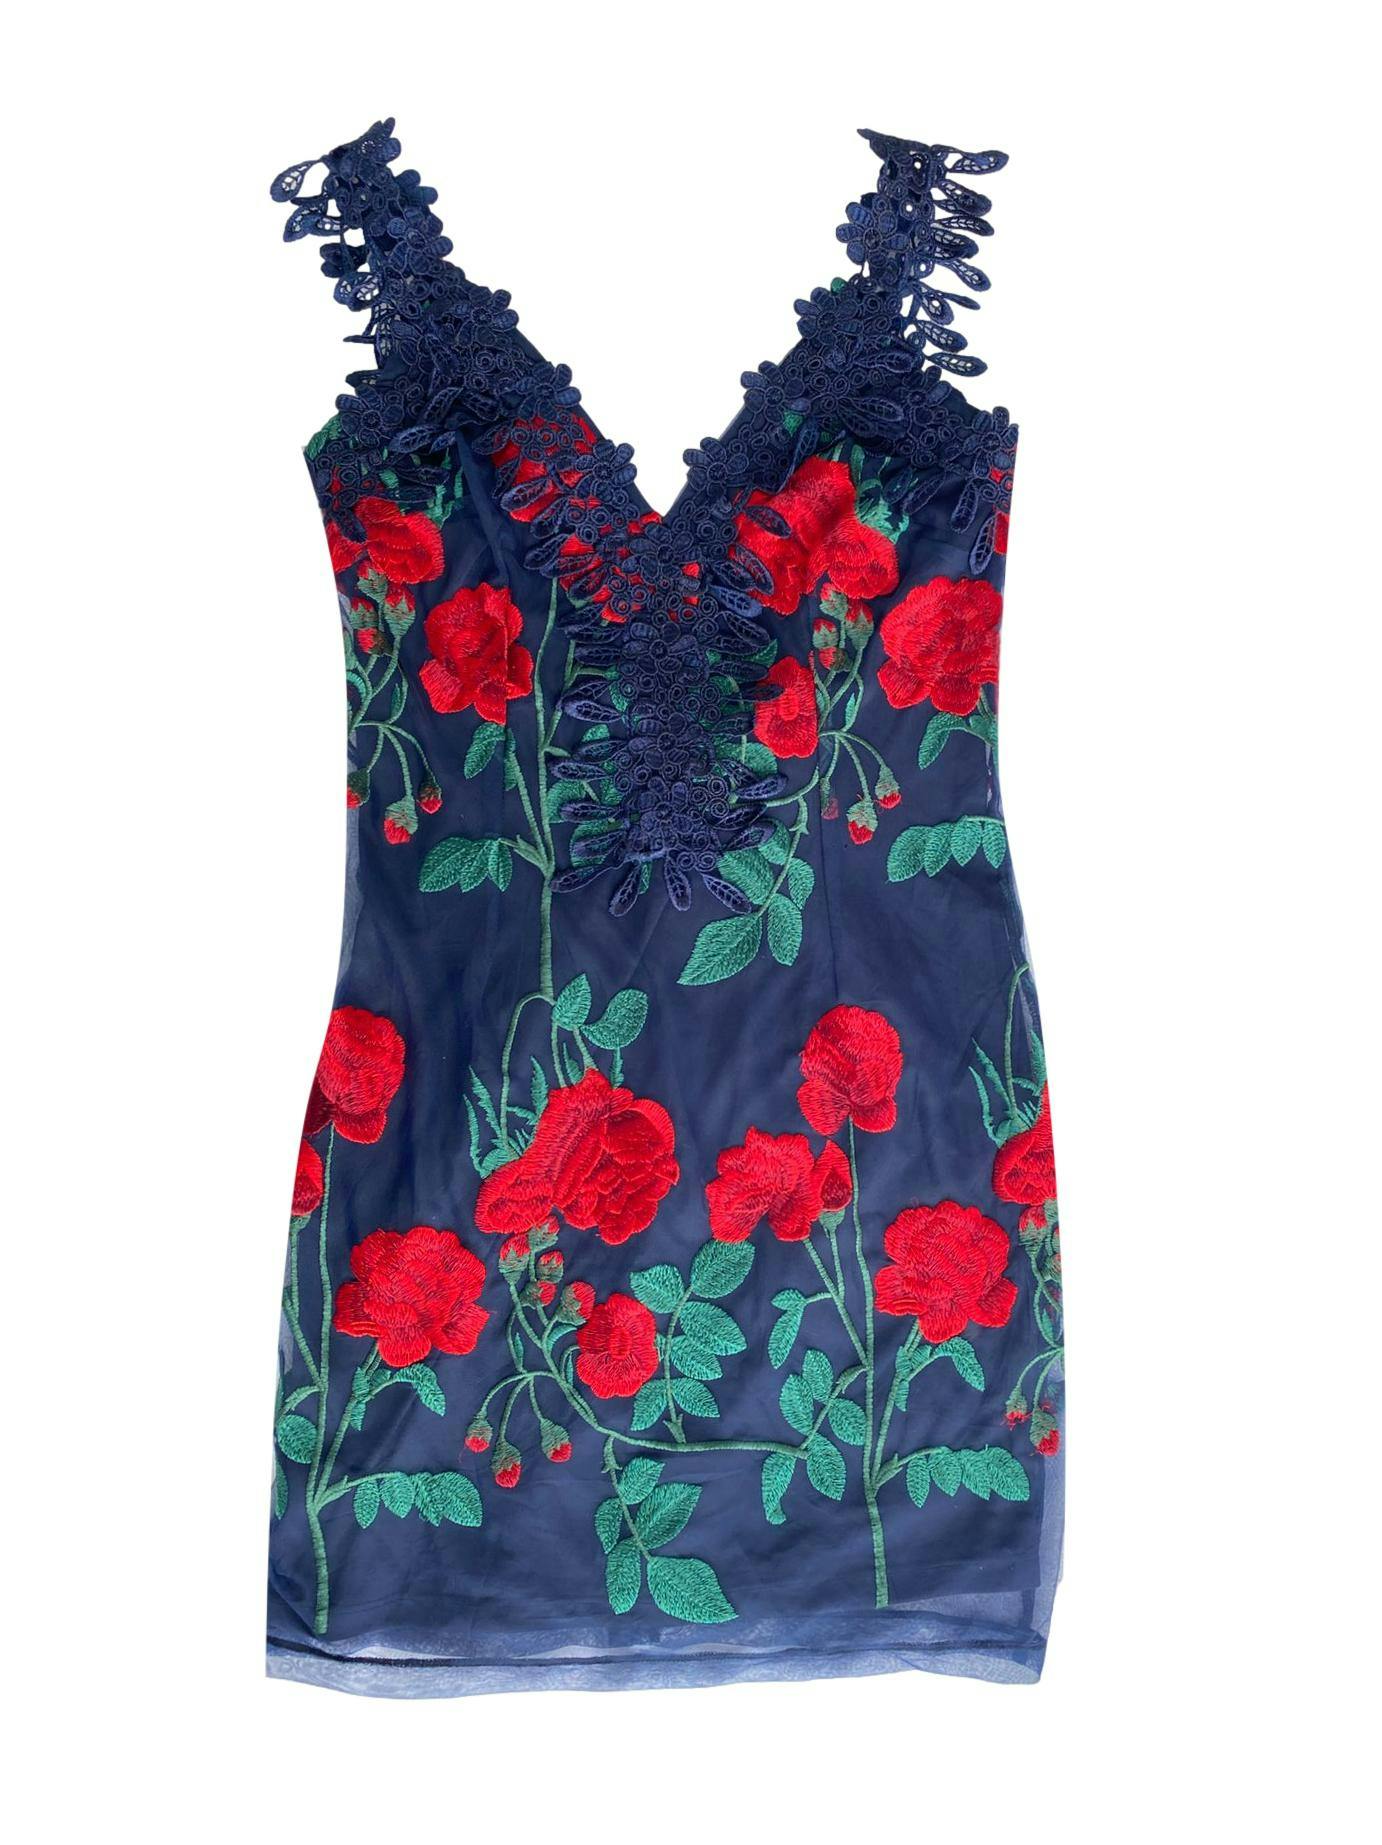 Vestido de tulle azul oscuro con bordados de rosas rojas y detalle de encaje floreado, forrado, cierre posterior. Busto: 82cm, largo: 62cm. Costo original 450 soles.